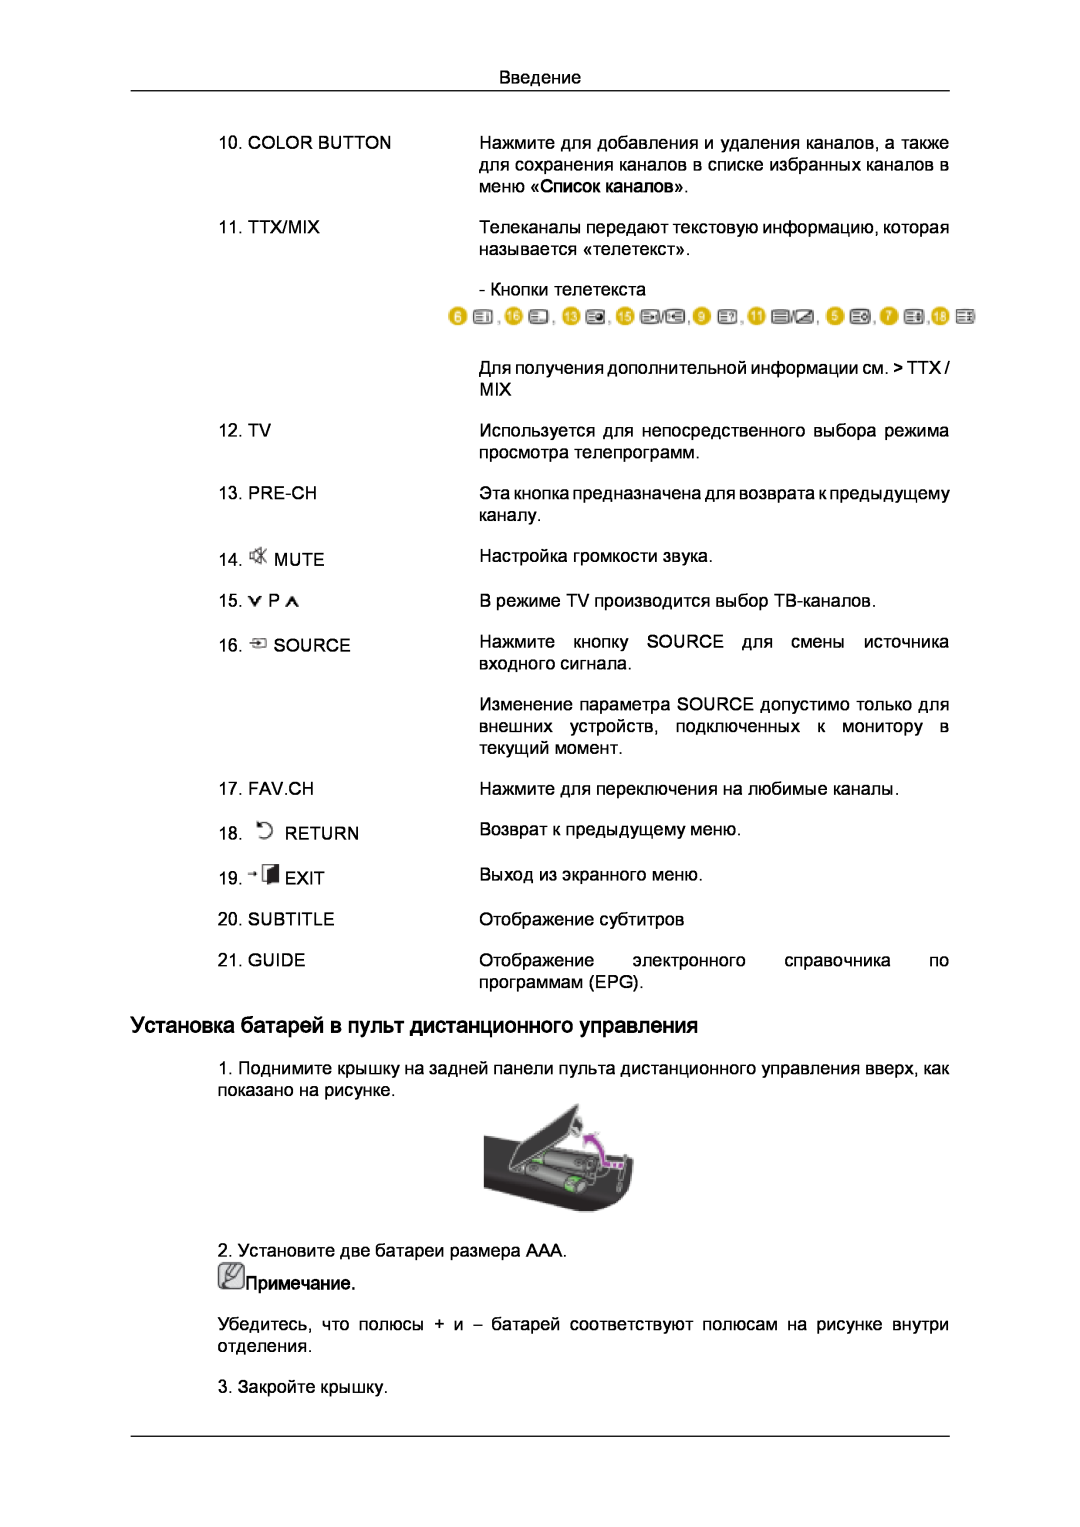 Samsung LS24TDDSU/CI, LS20TDVSUV/EN Установка батарей в пульт дистанционного управления, меню «Список каналов», Примечание 